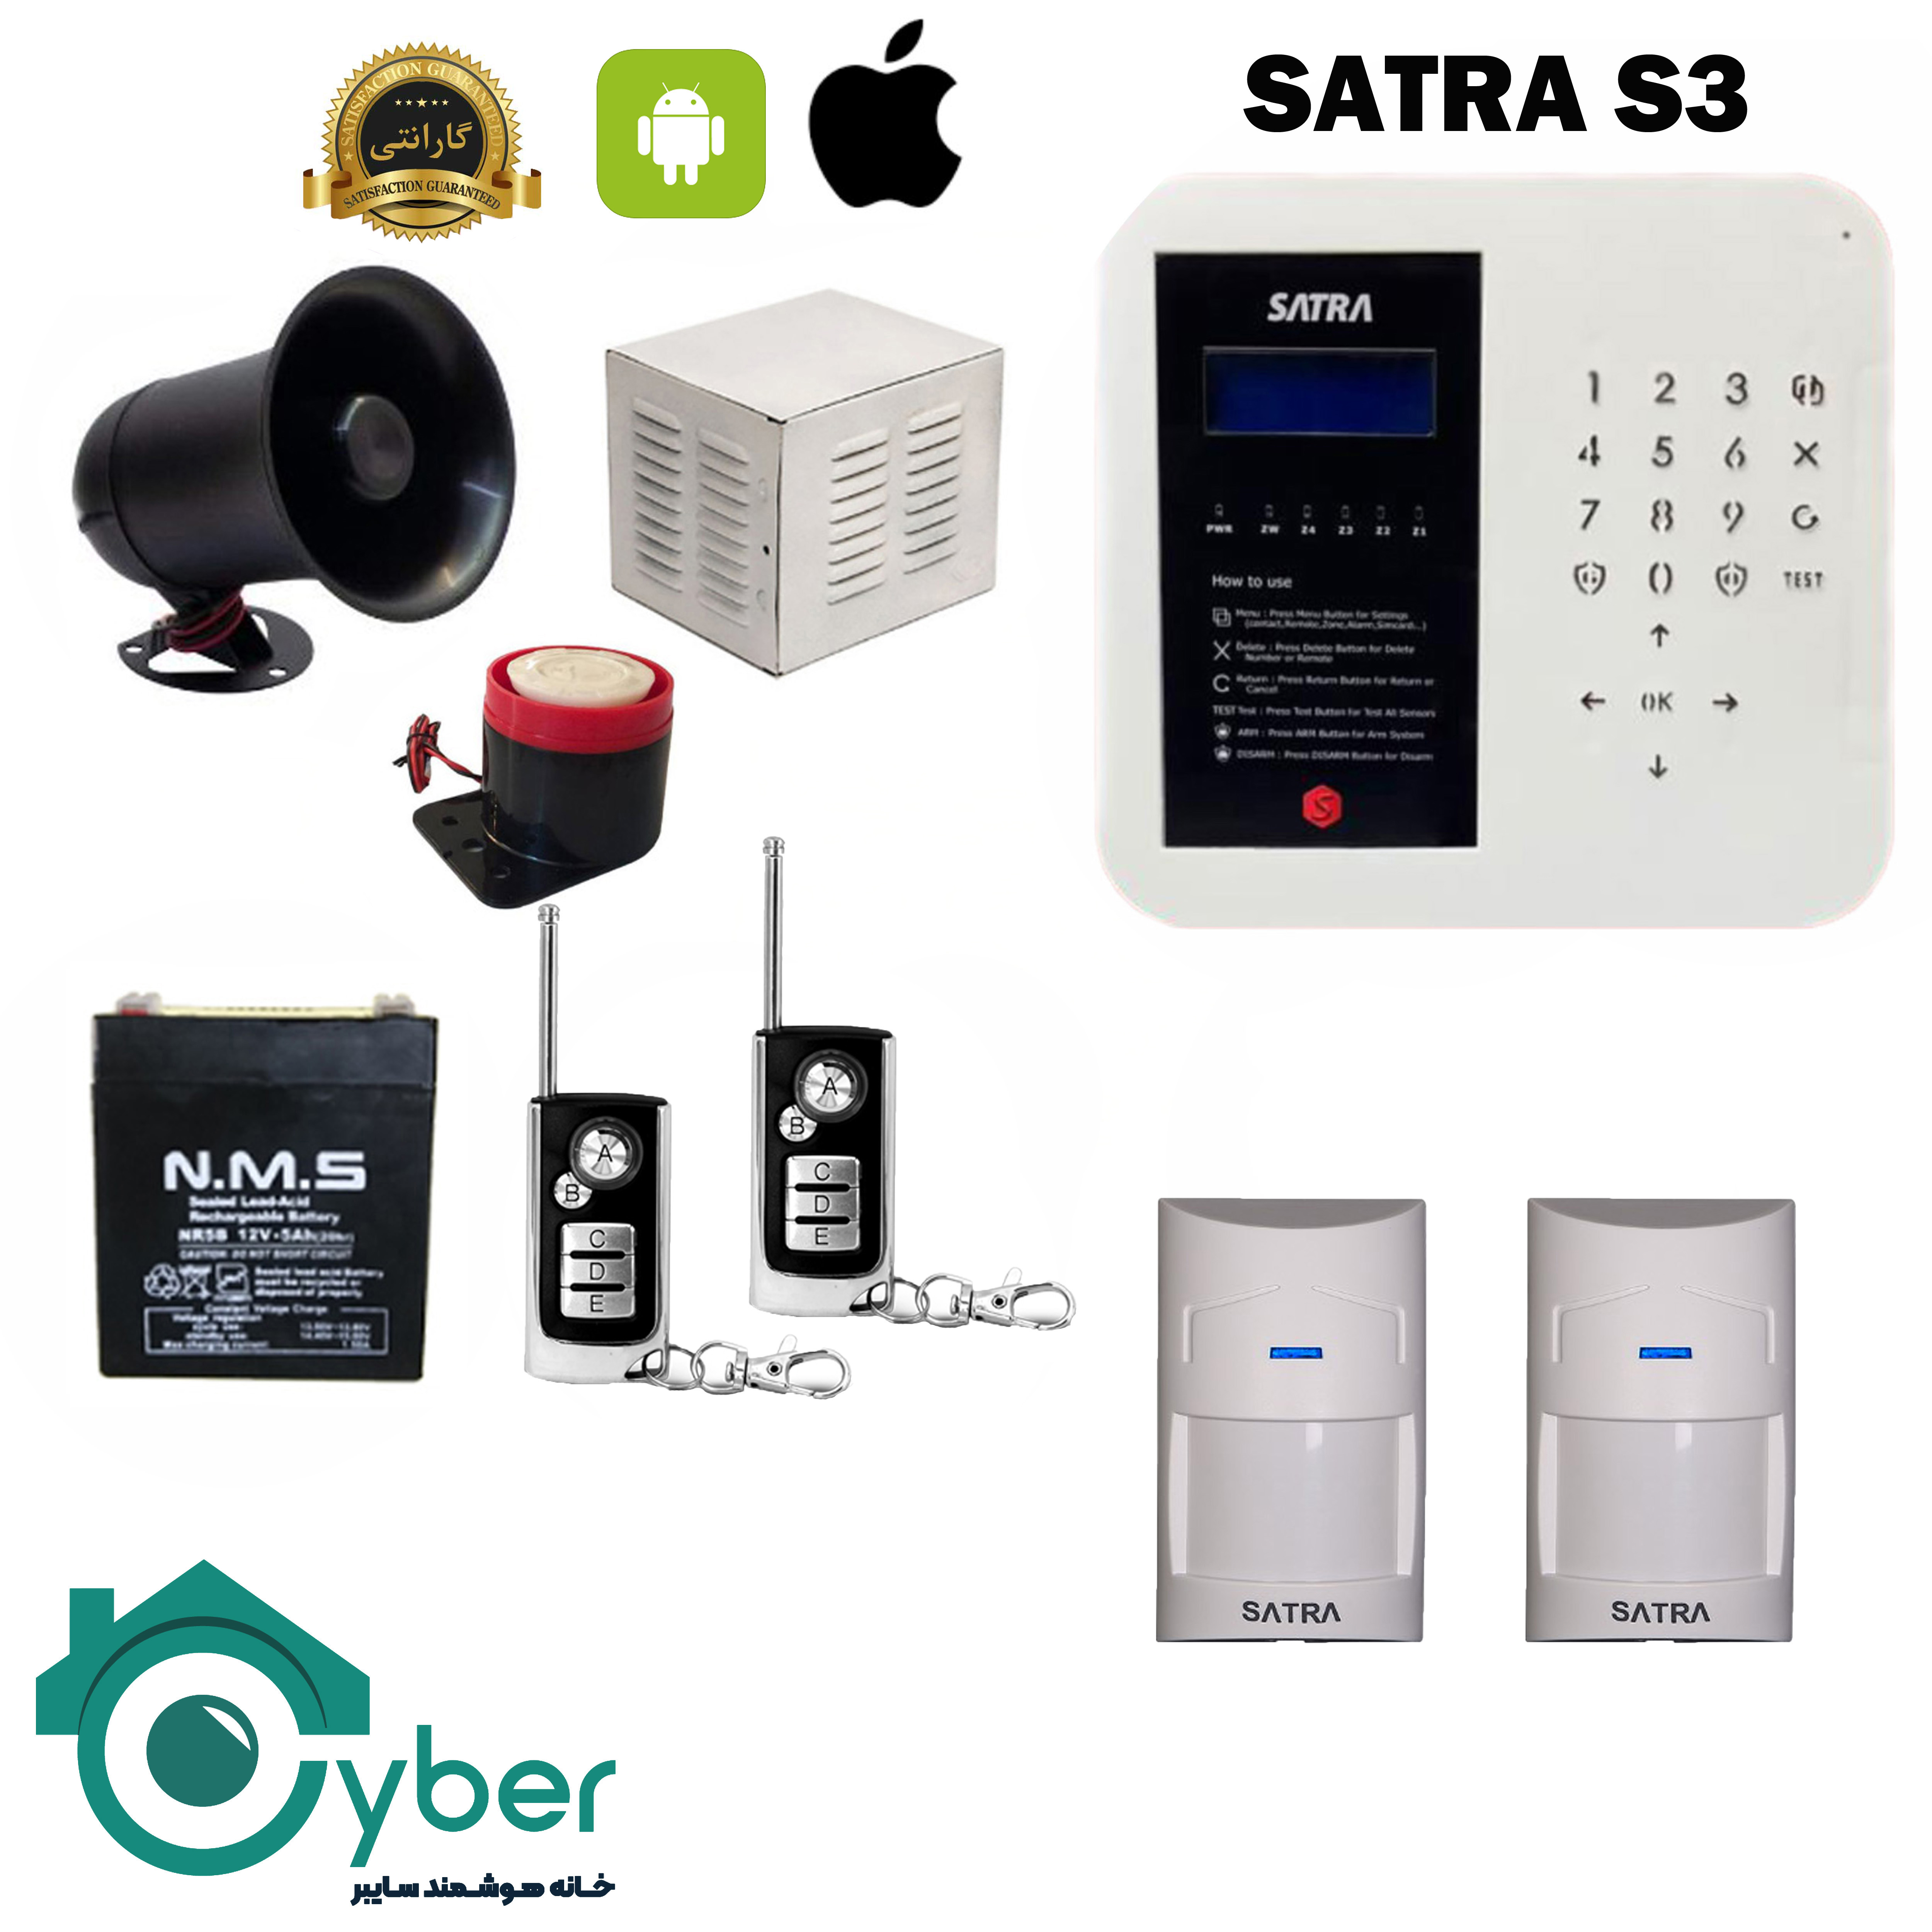 پکیج کامل دزدگیر اماکن SARTA S3 ساترا - 2 عدد سنسور بی سیم